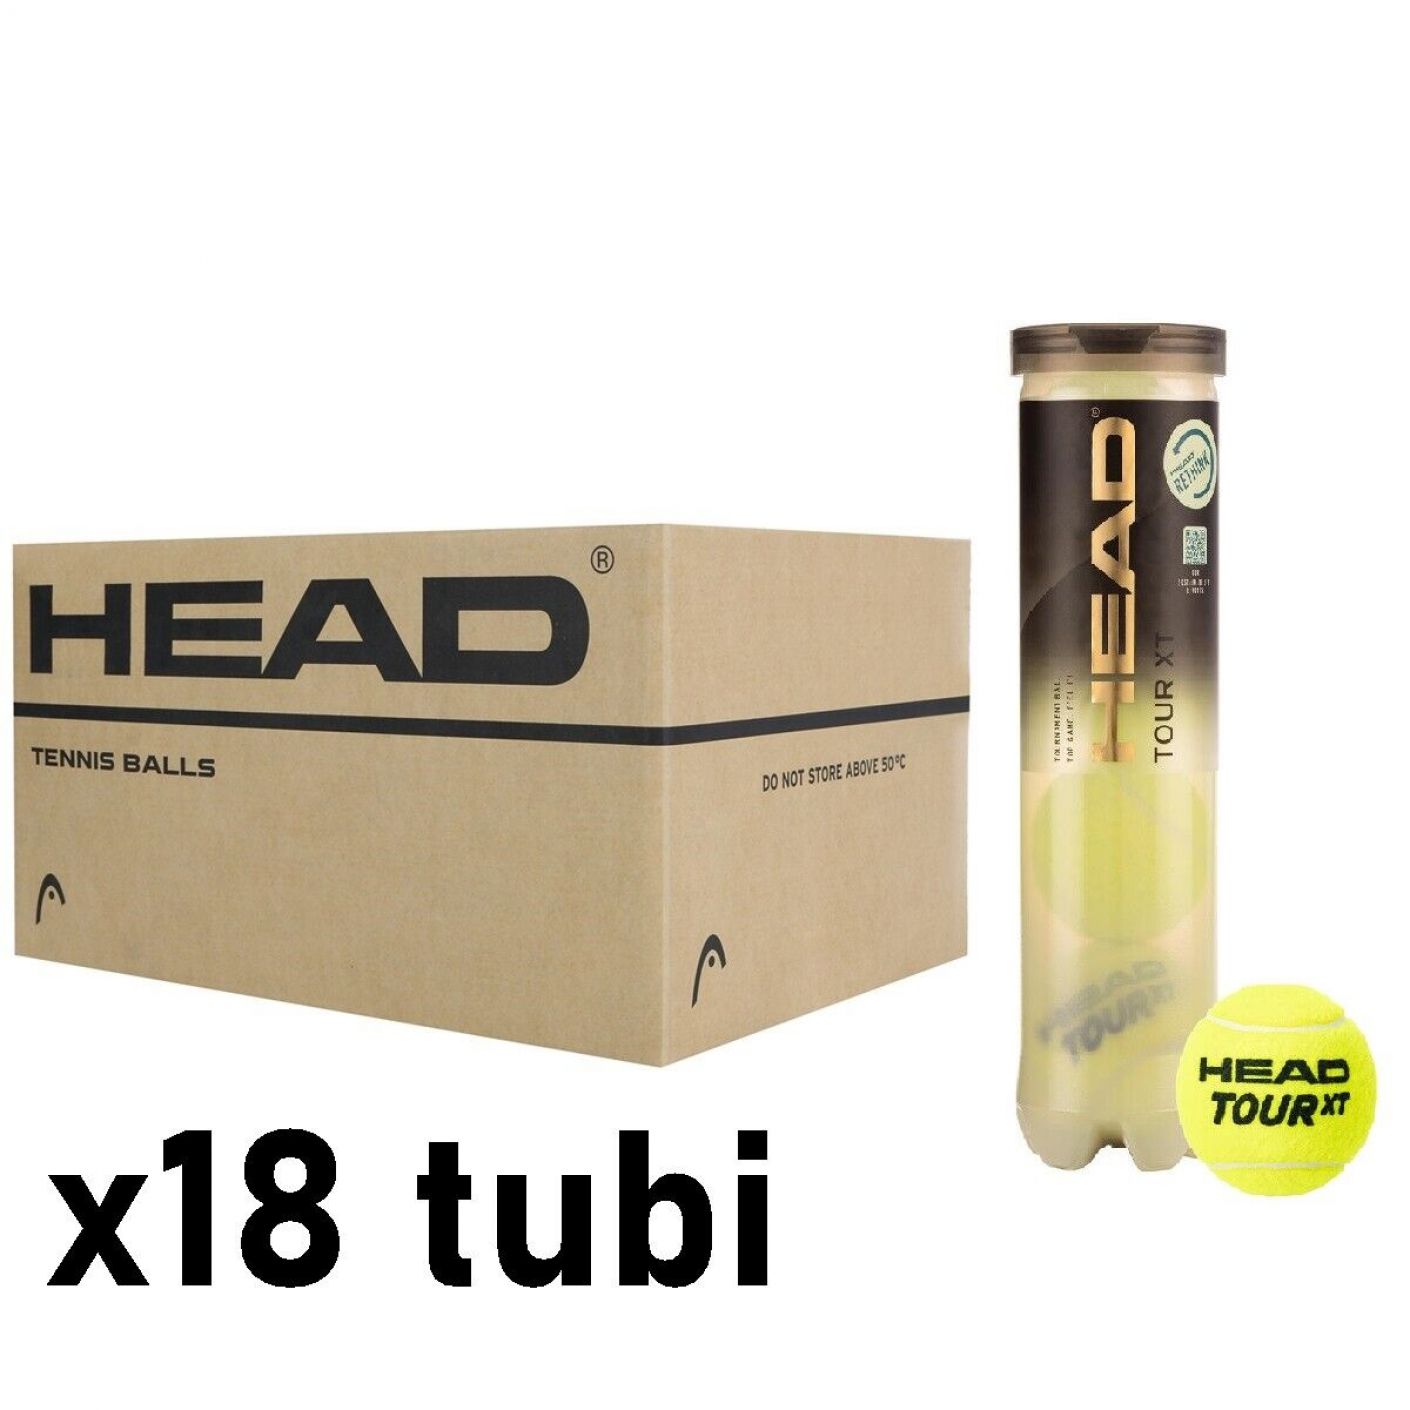 Head Tour XT x4 Cartone da 18 Tubi